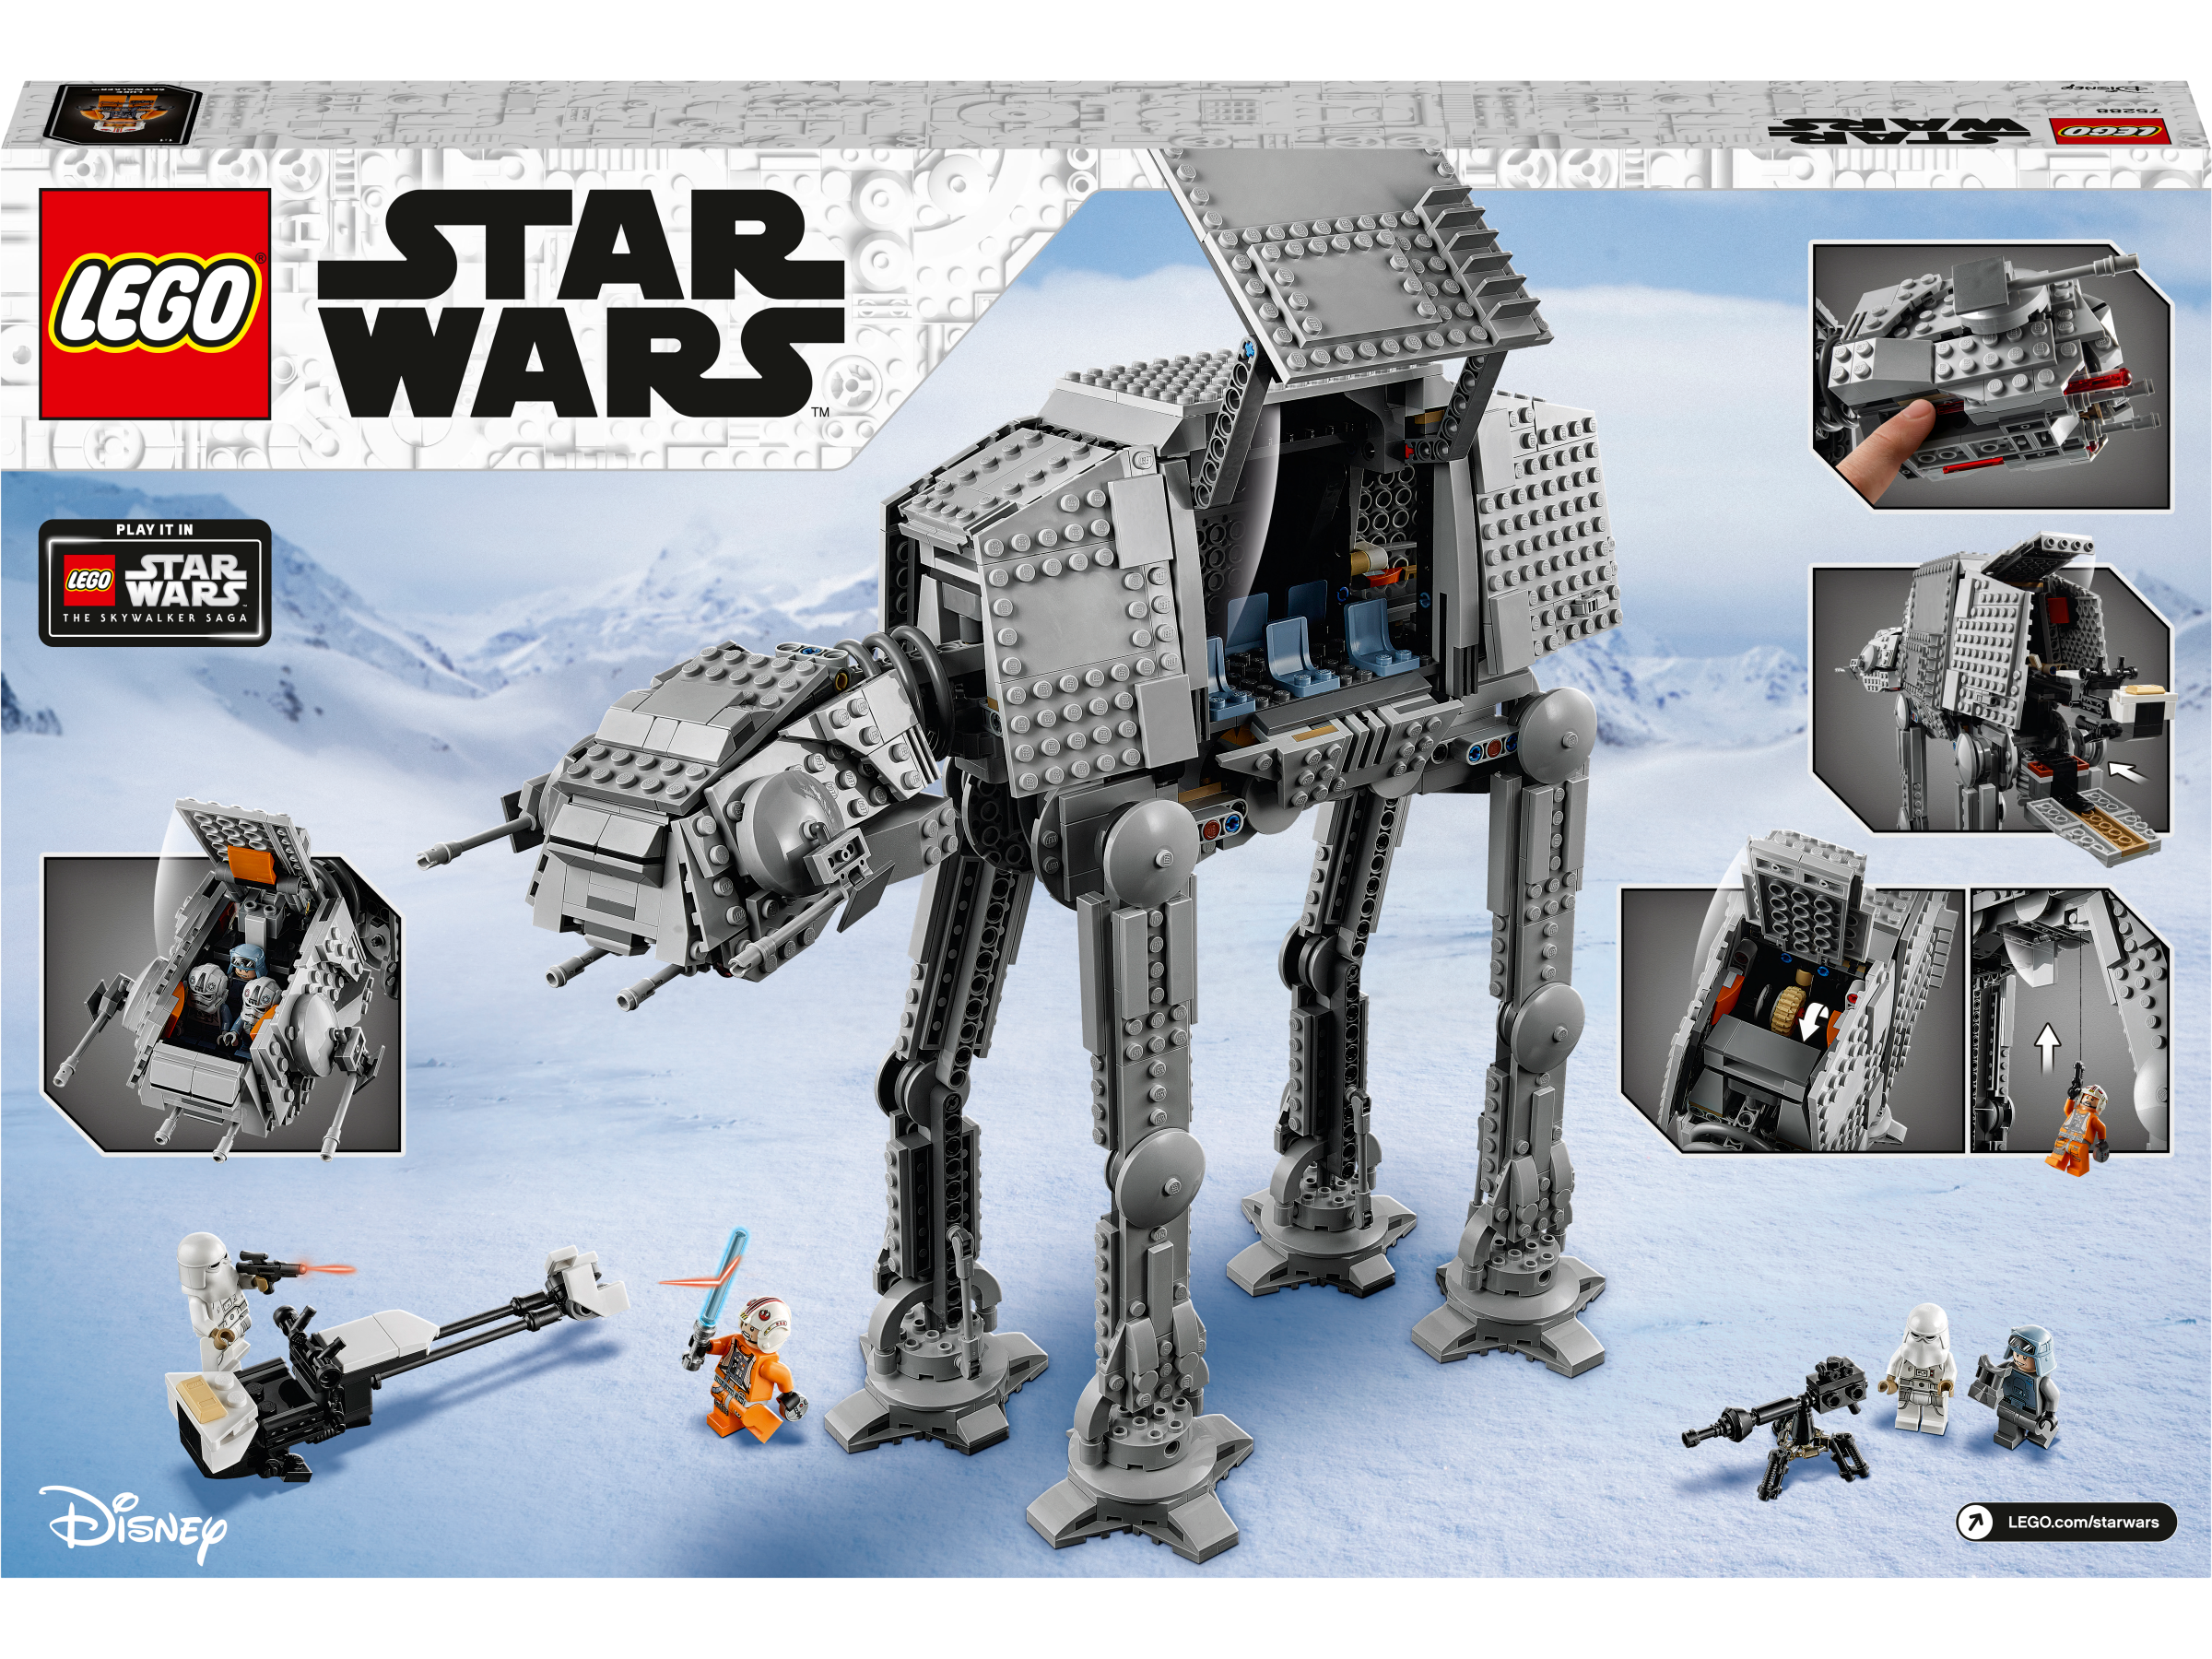 LEGO Star Wars - AT-AT 10+